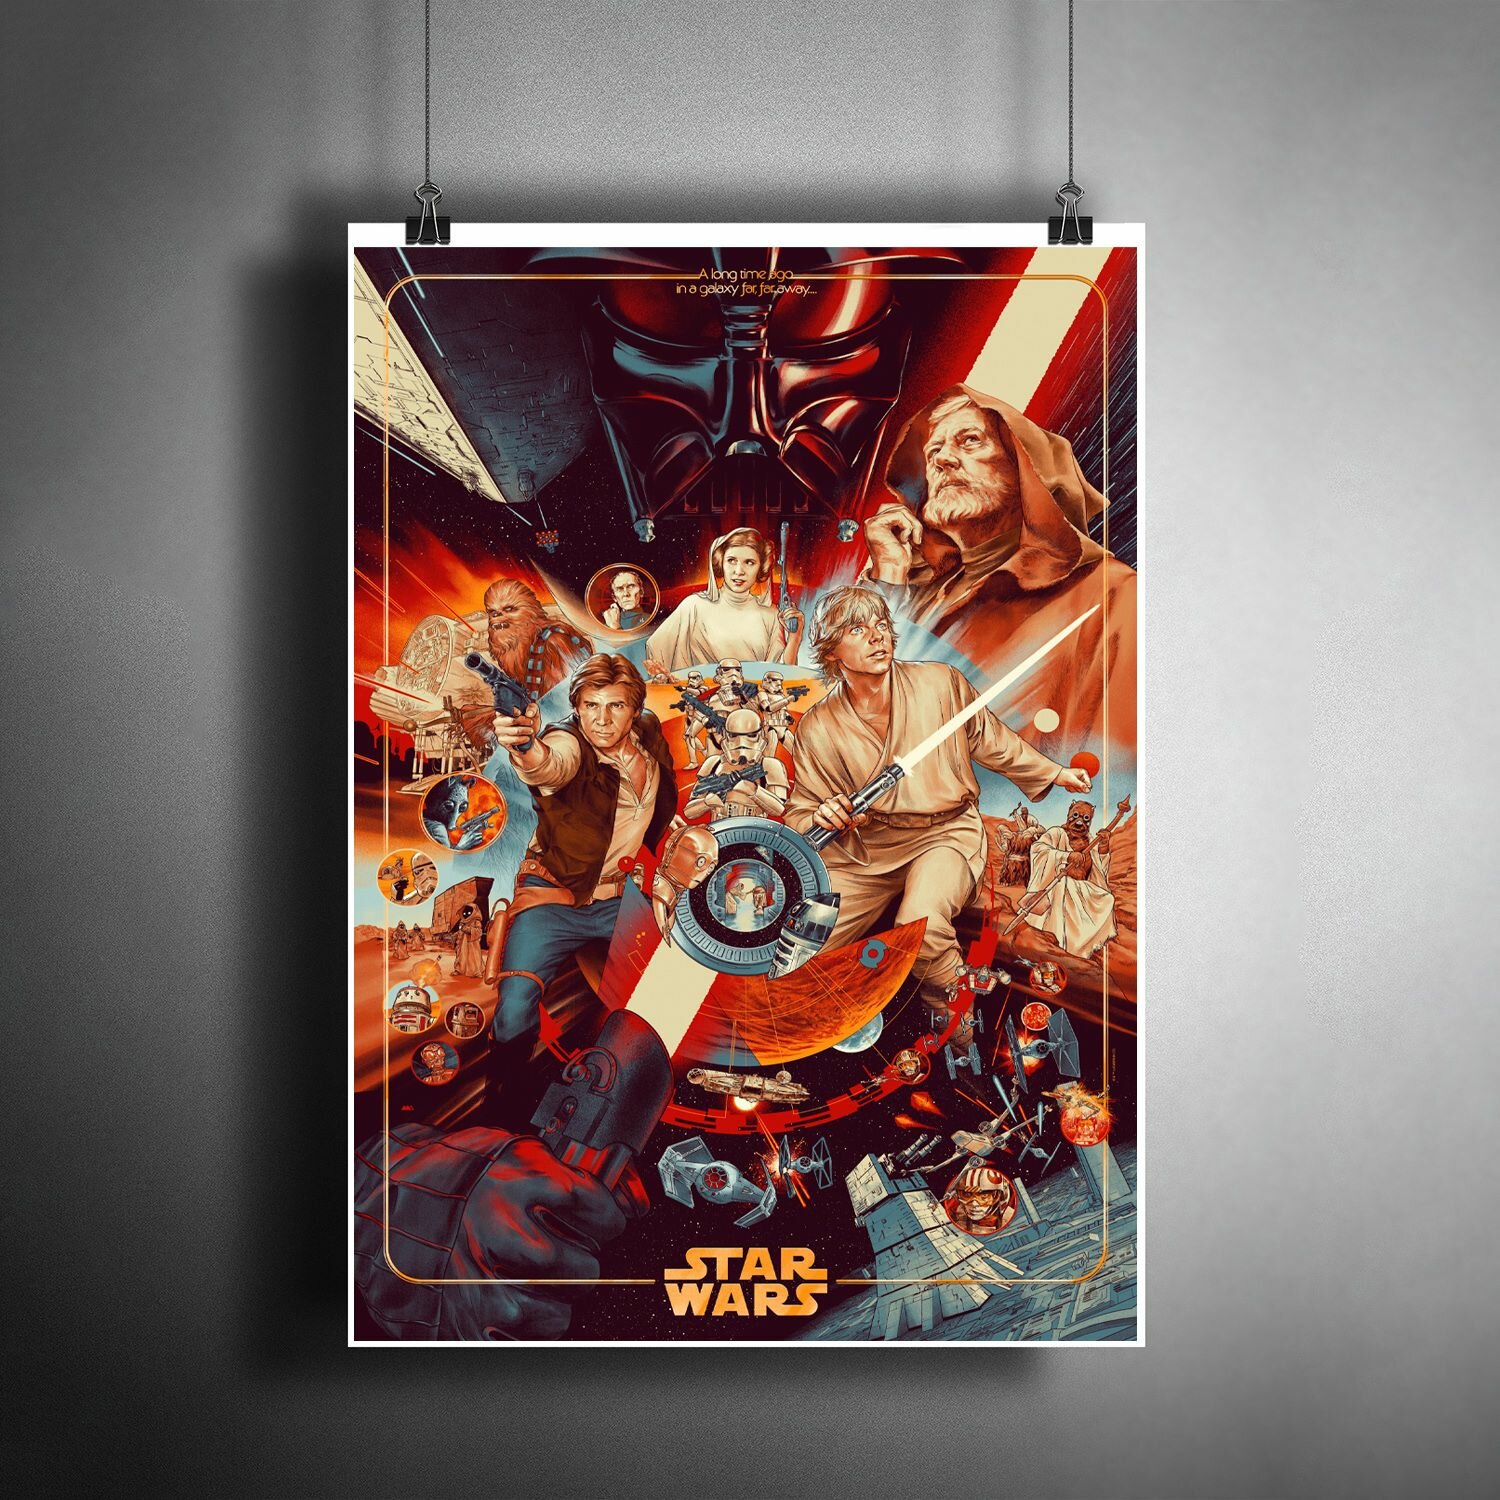 Постер плакат "Звездные войны. Star Wars" / Декор для дома, офиса, комнаты, квартиры, детской A3 (297 x 420 мм)